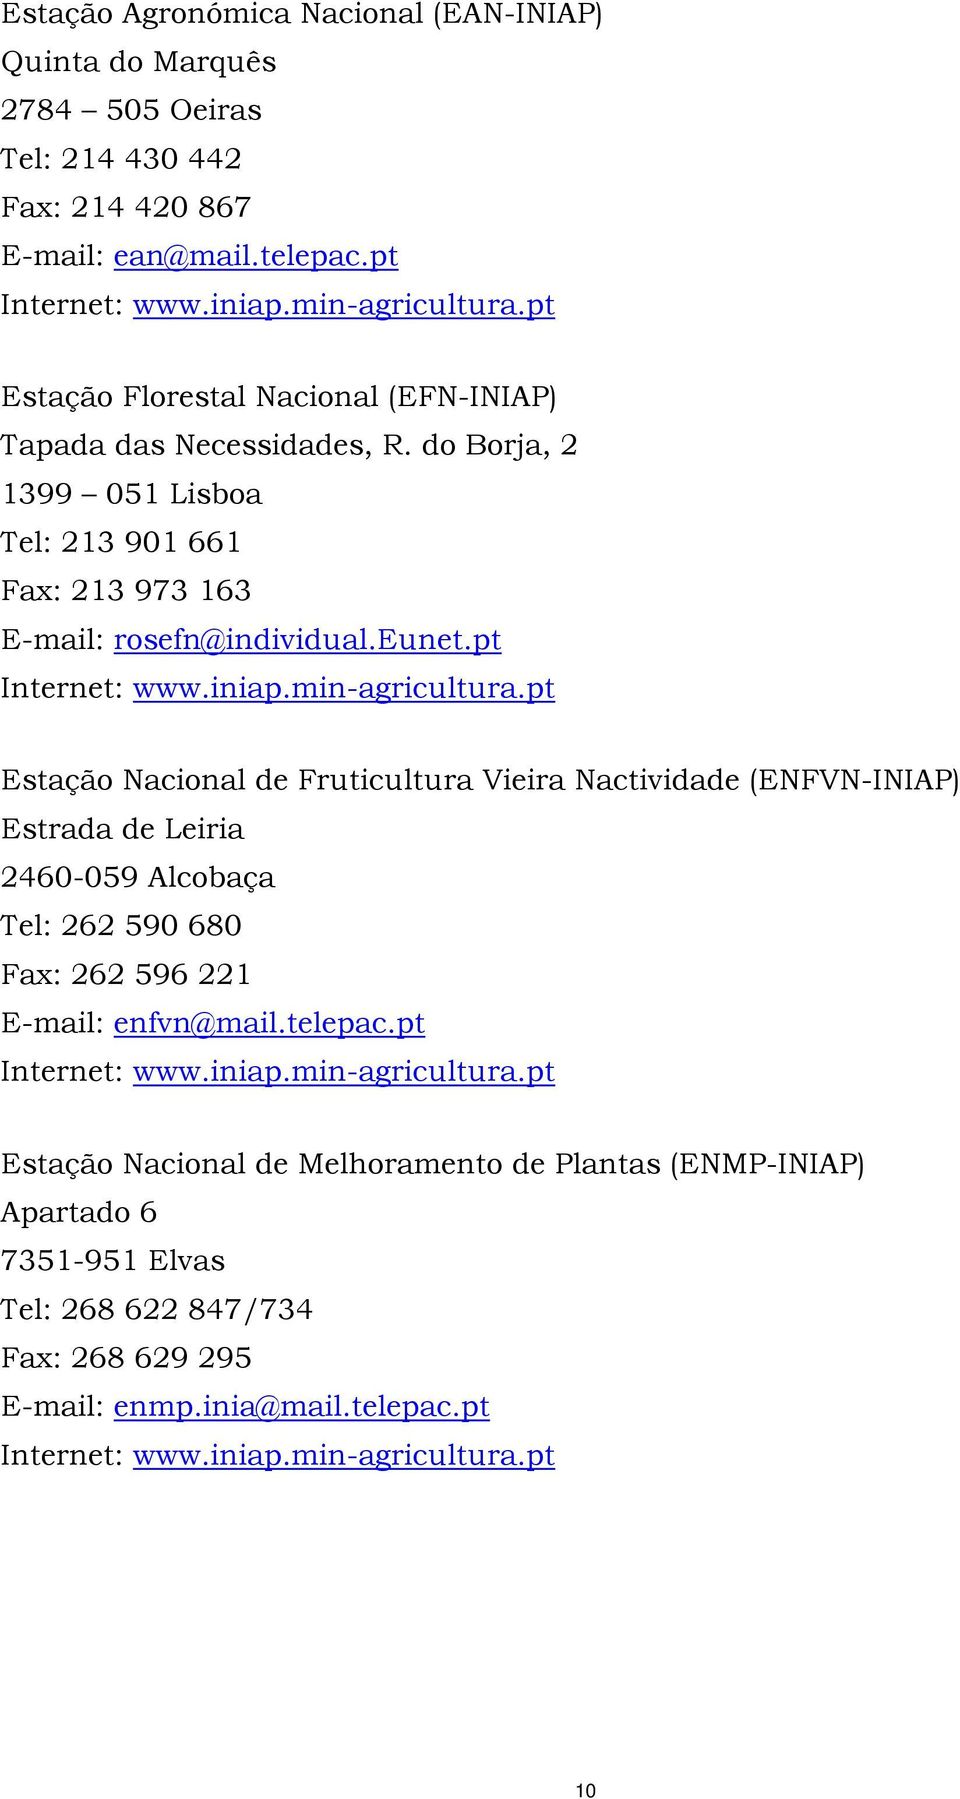 min-agricultura.pt Estação Nacional de Fruticultura Vieira Nactividade (ENFVN-INIAP) Estrada de Leiria 2460-059 Alcobaça Tel: 262 590 680 Fax: 262 596 221 E-mail: enfvn@mail.telepac.